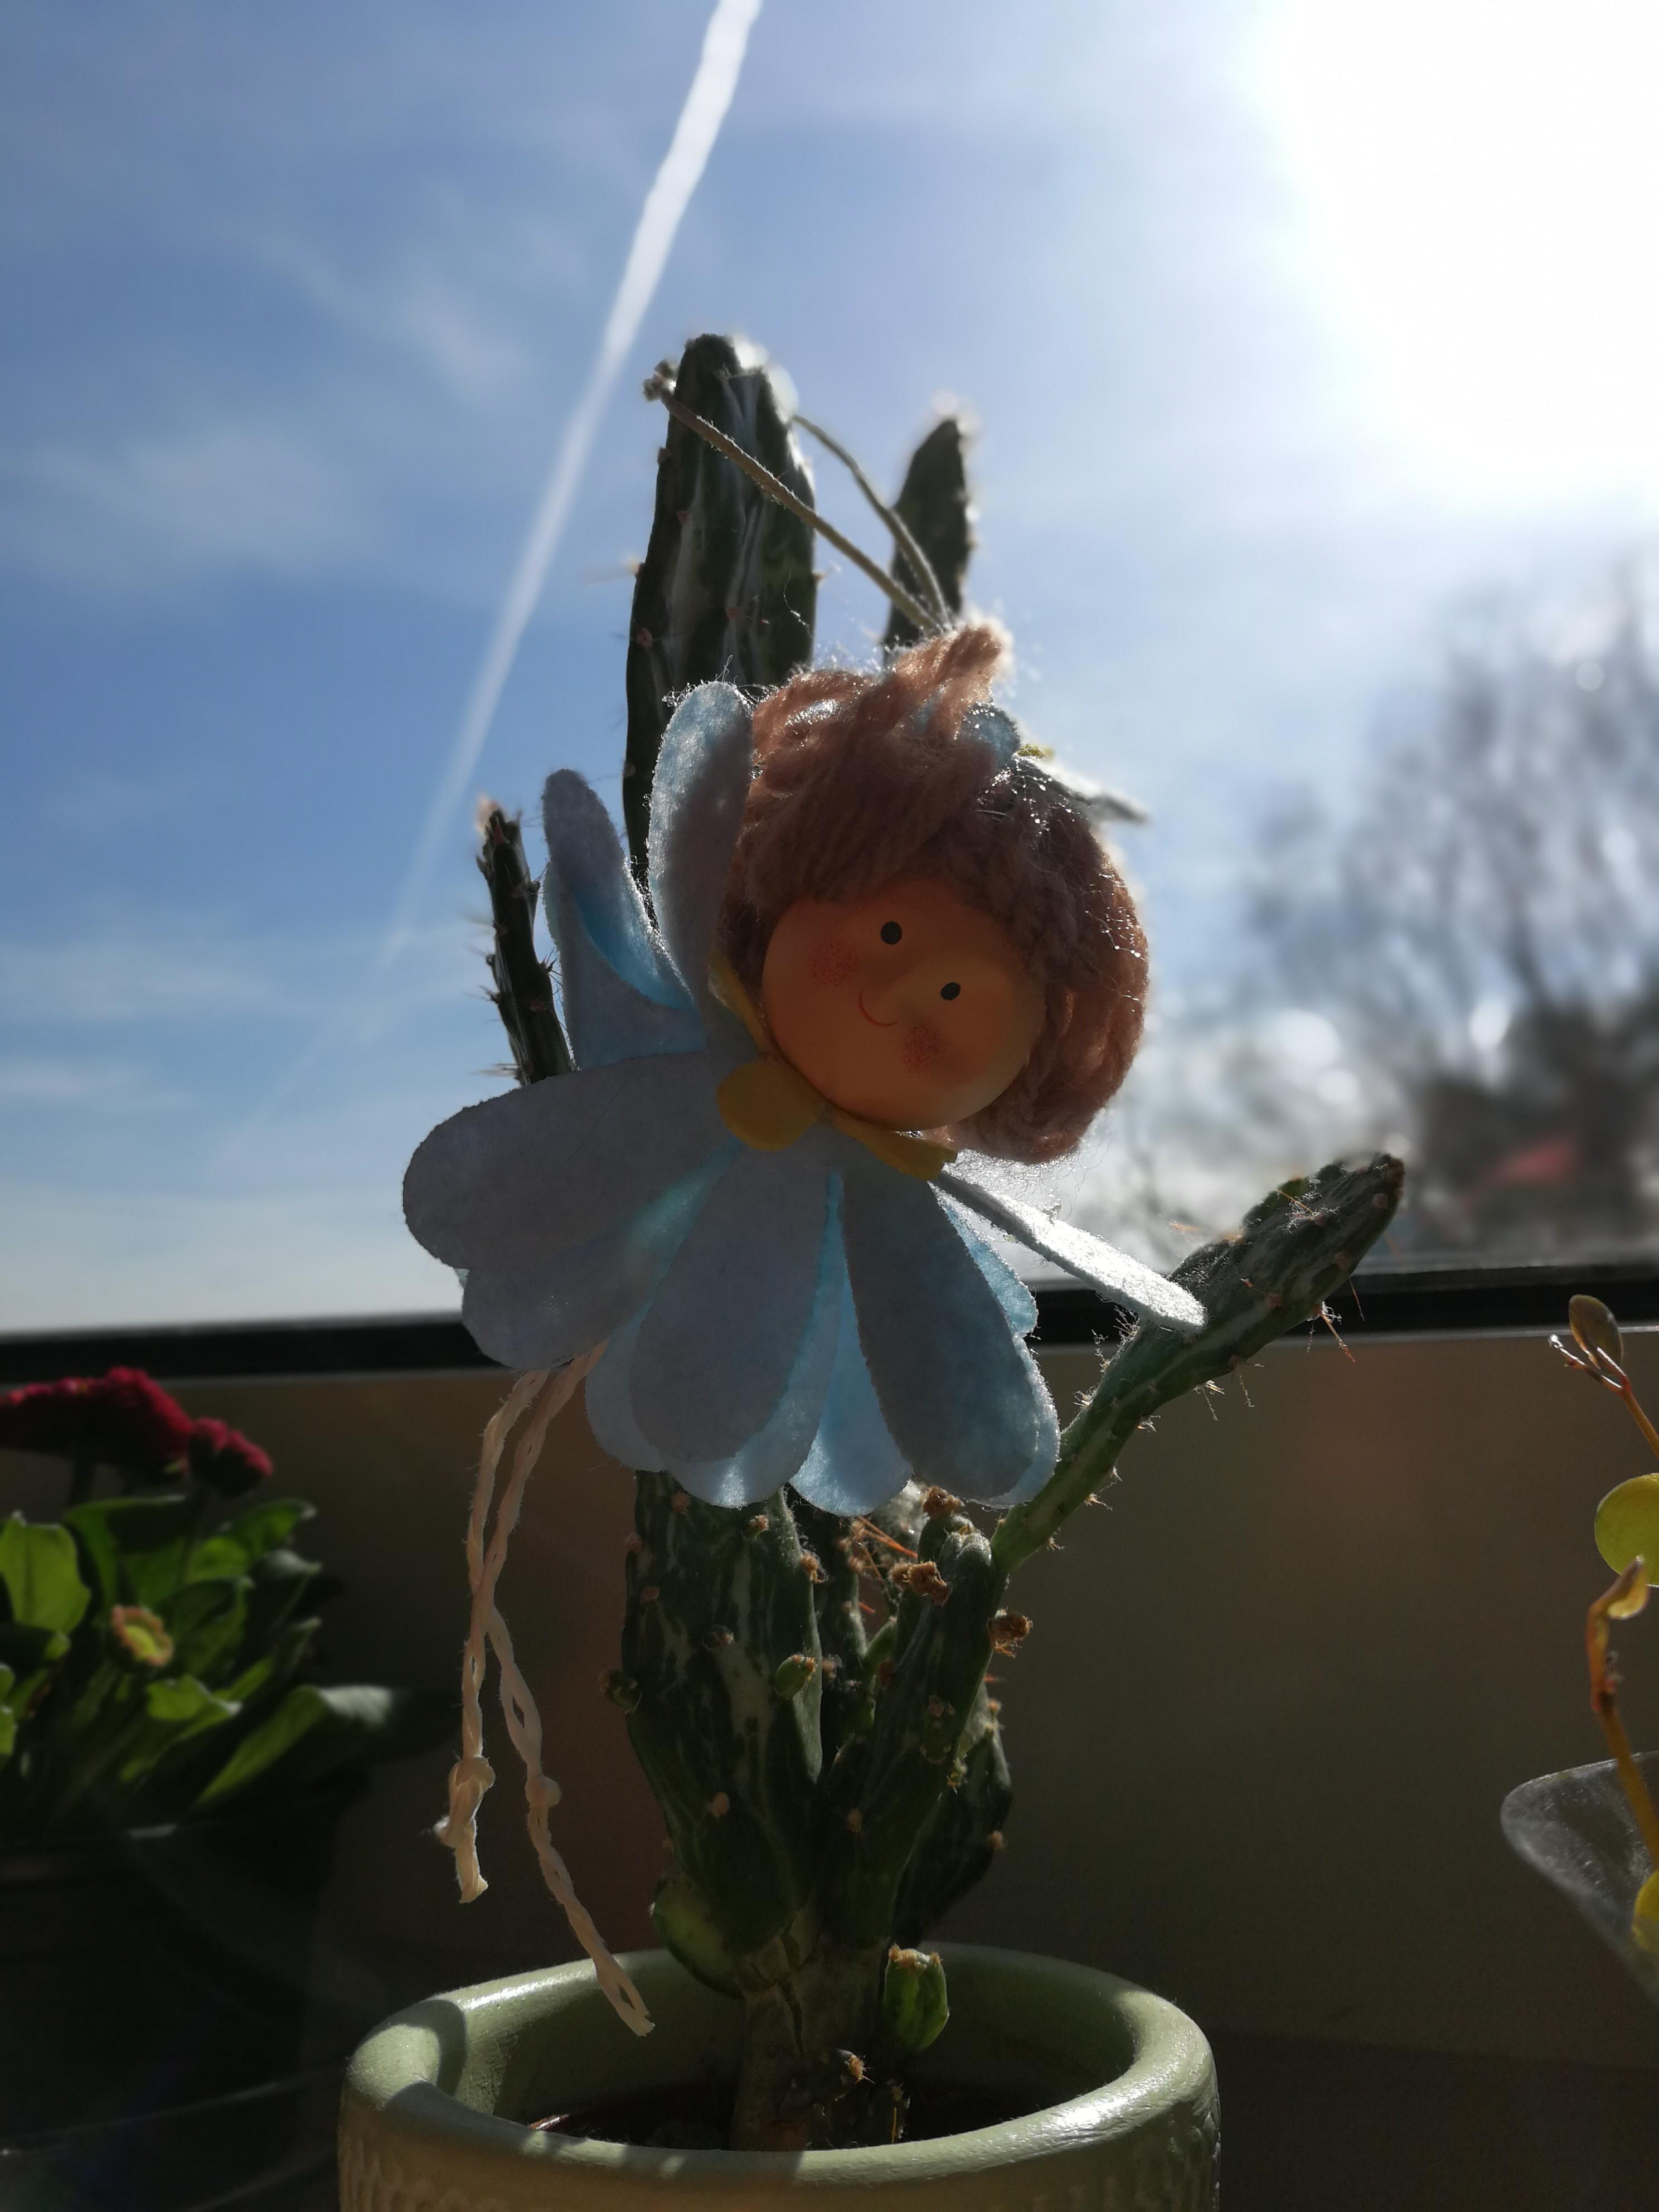 ...mein #Frühlingsdeko 🐦
#Sonne #Himmelblau #Blumen #Kaktus